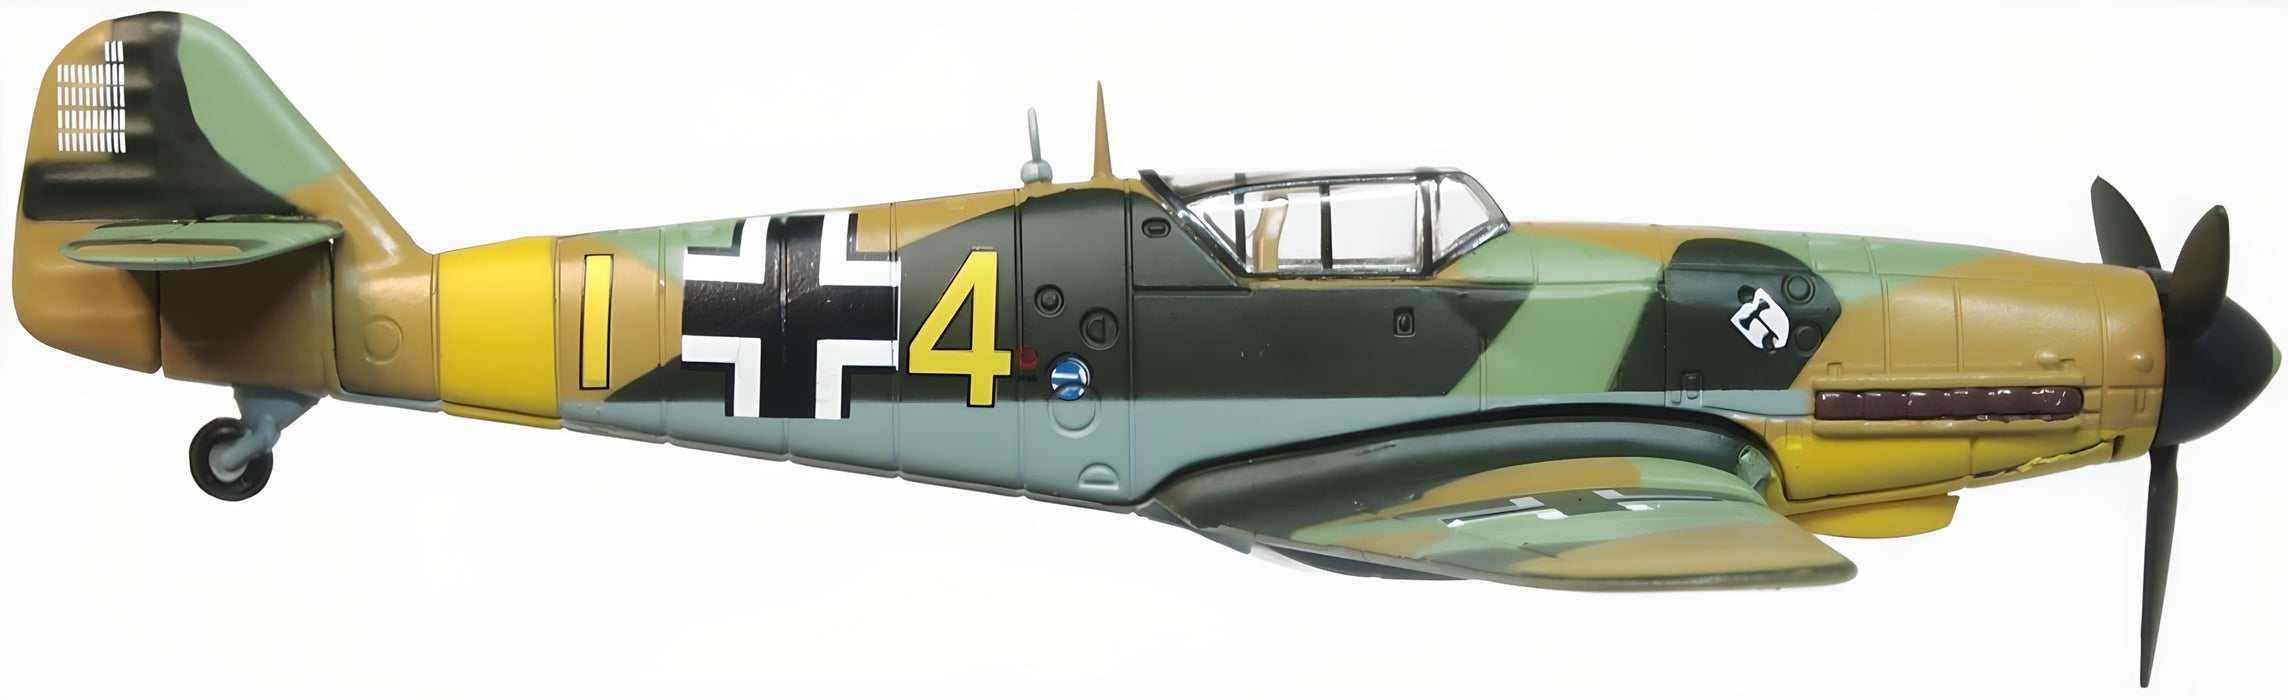 Messerschmitt-Bf-109F4/Trop-104-Eberhard-von-Boremsk No Swastika - 172 Scale AC114S right